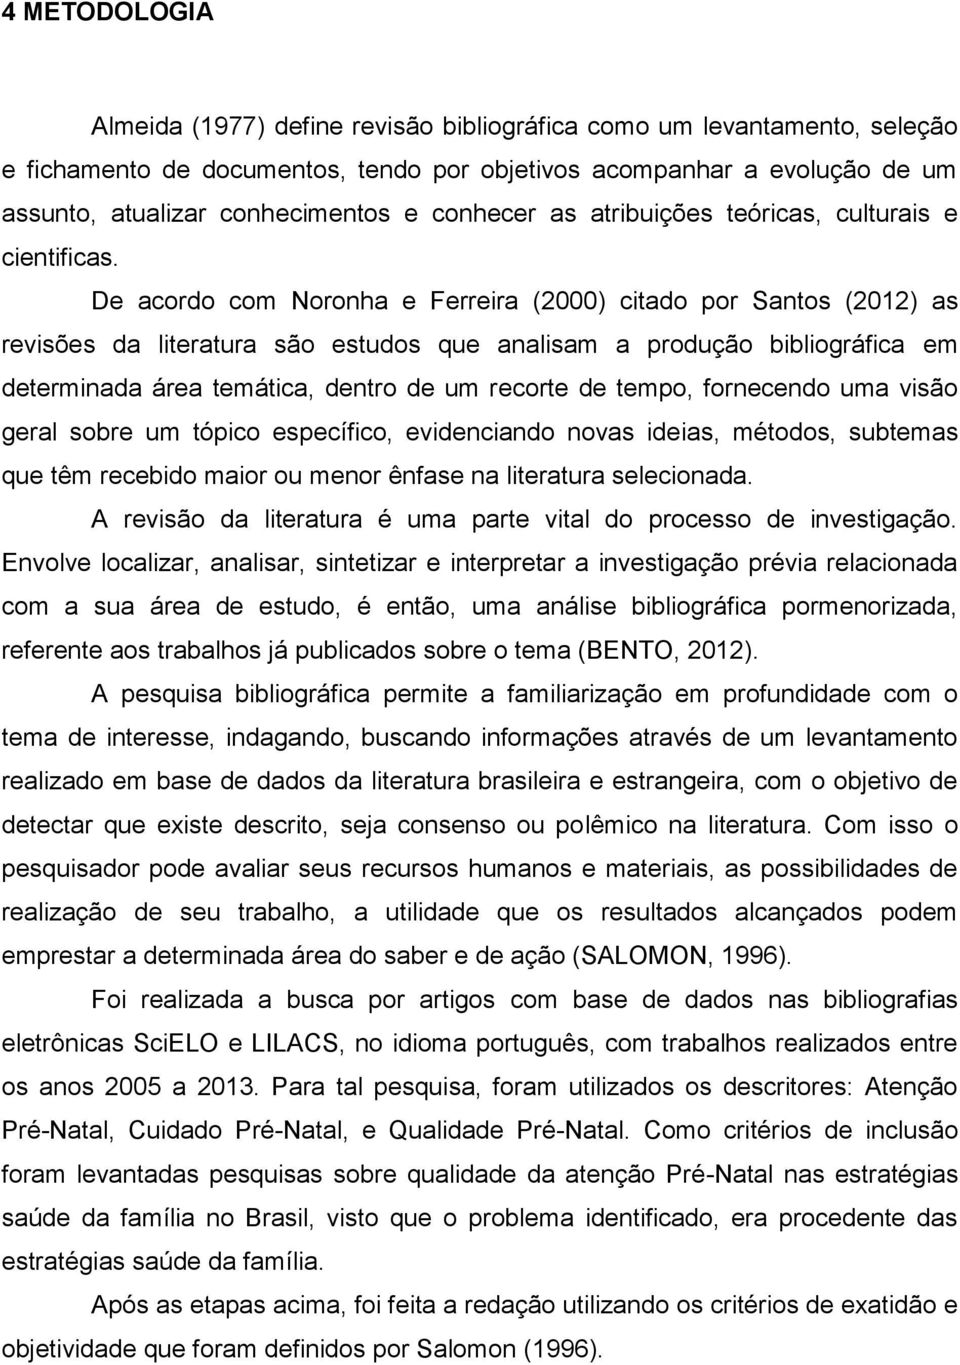 De acordo com Noronha e Ferreira (2000) citado por Santos (2012) as revisões da literatura são estudos que analisam a produção bibliográfica em determinada área temática, dentro de um recorte de